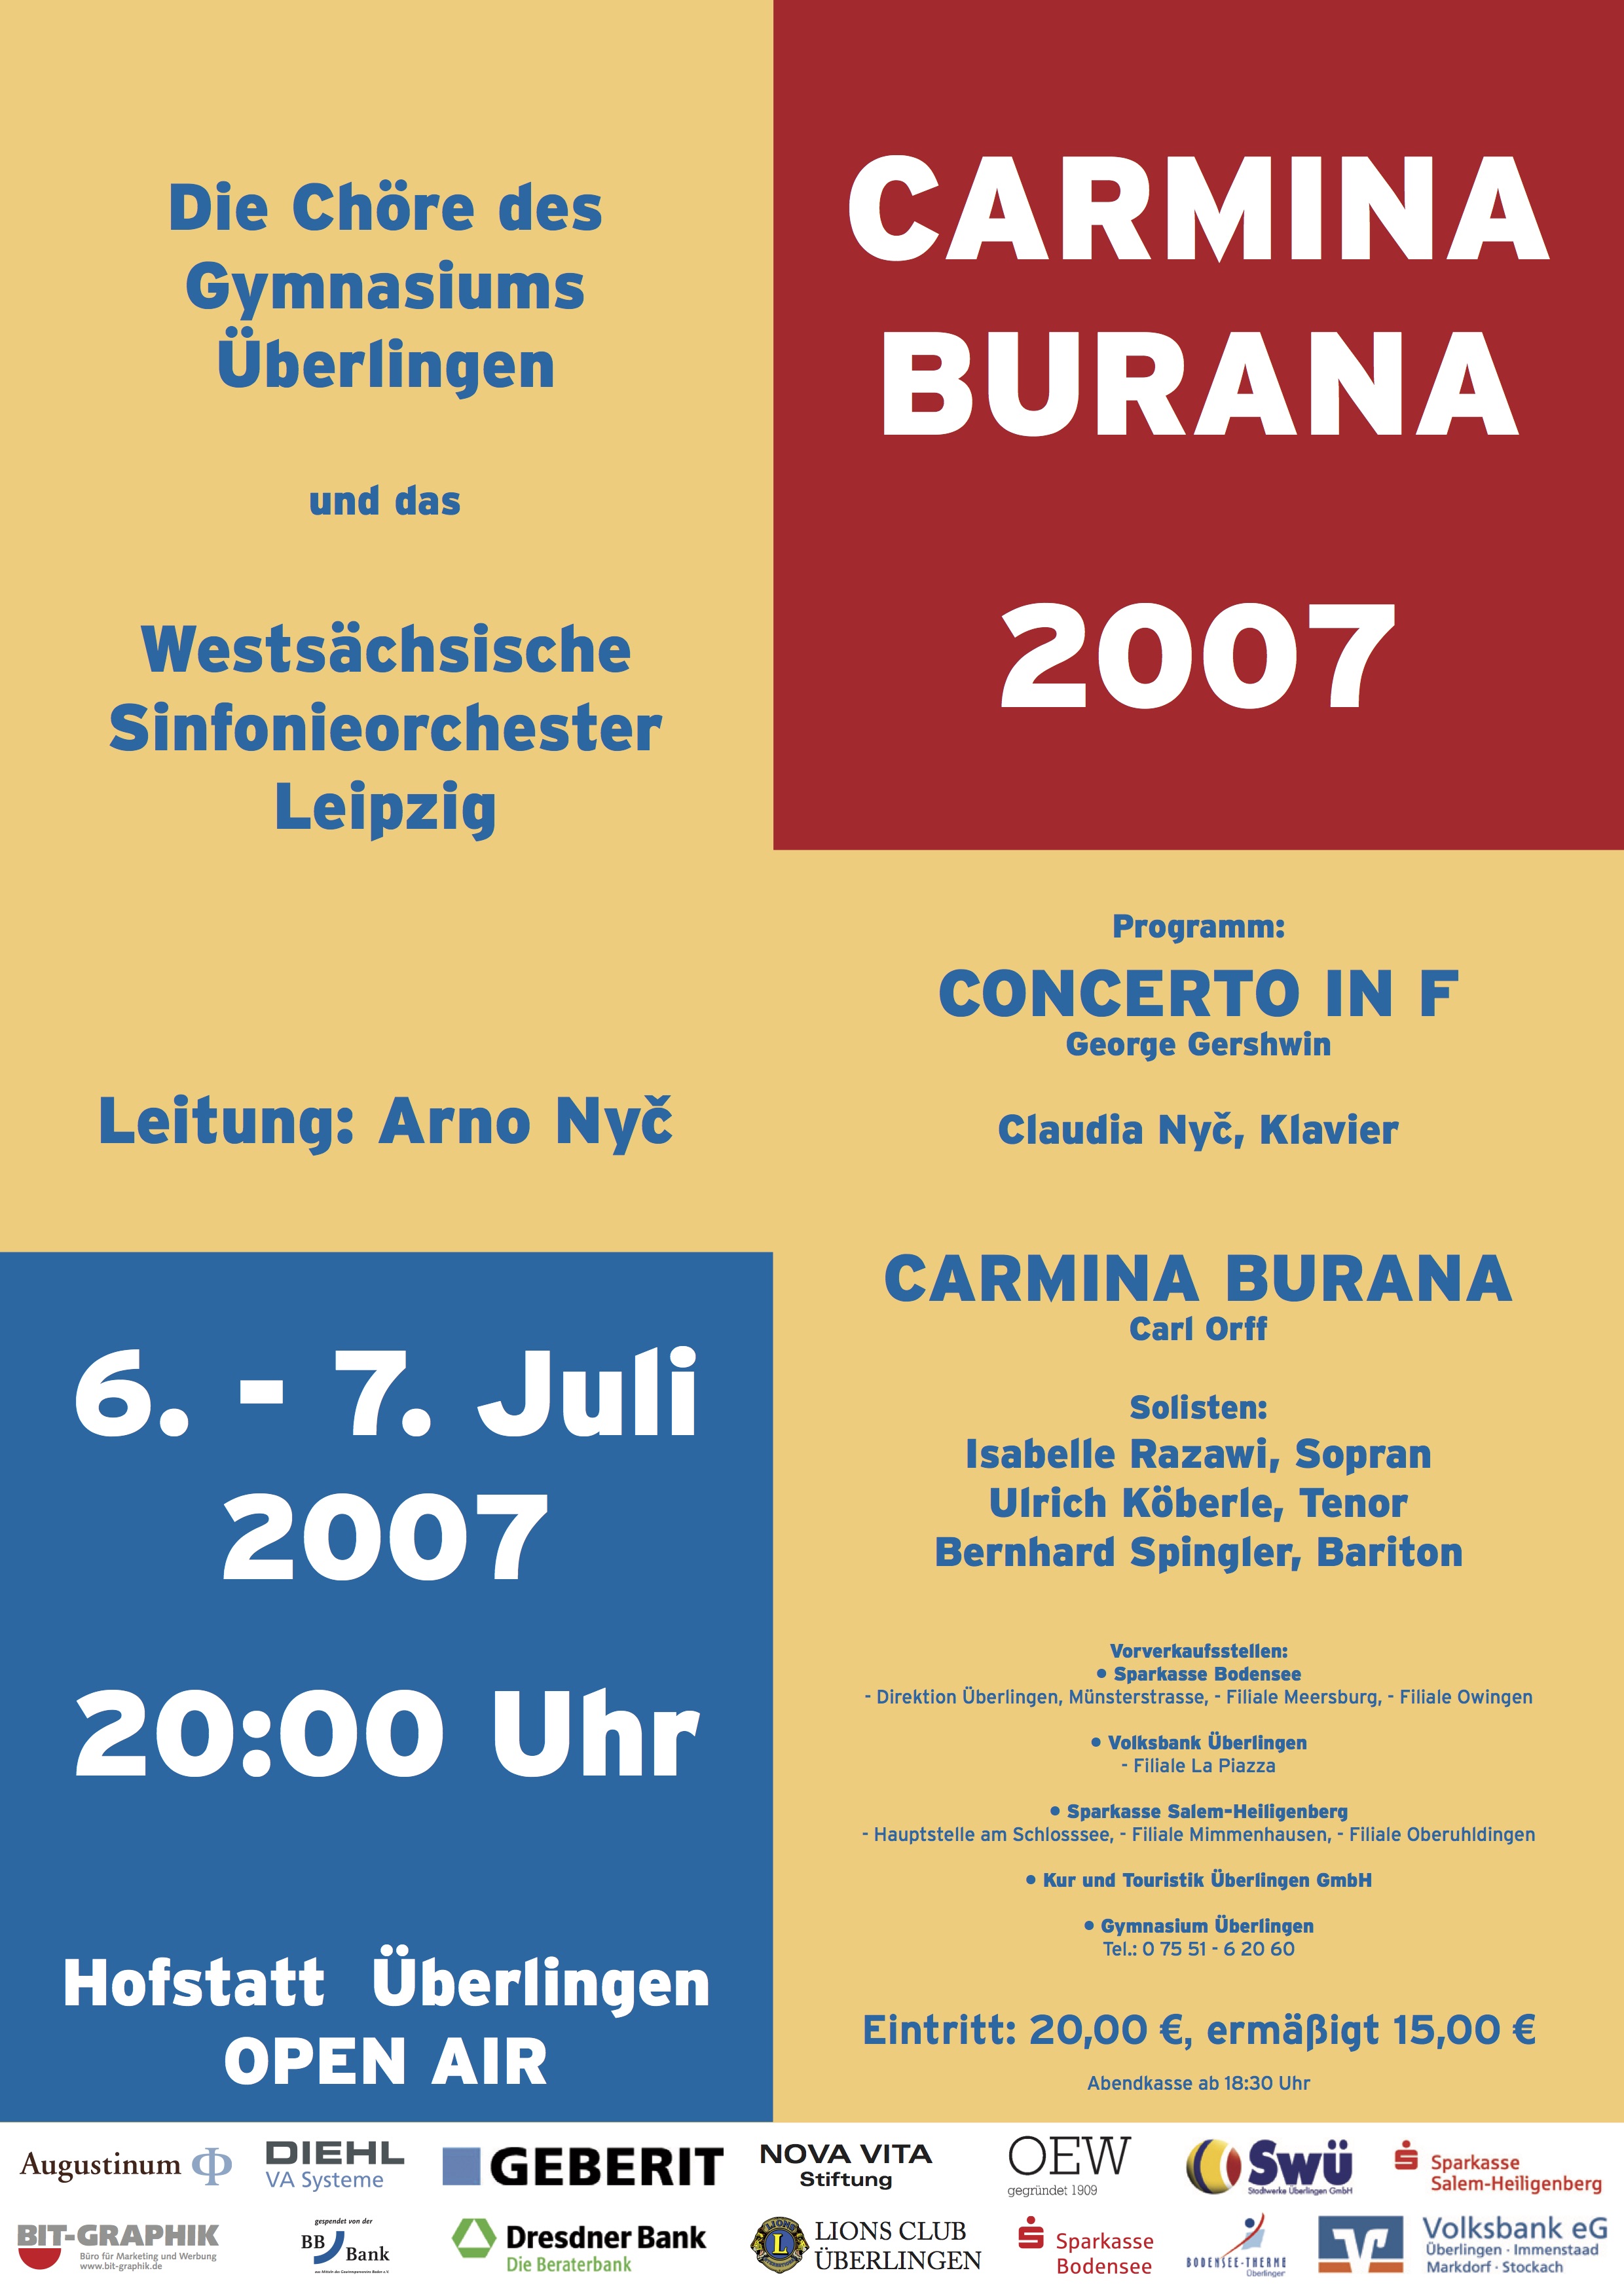 Carmina Burana, 2007 auf der Hofstatt